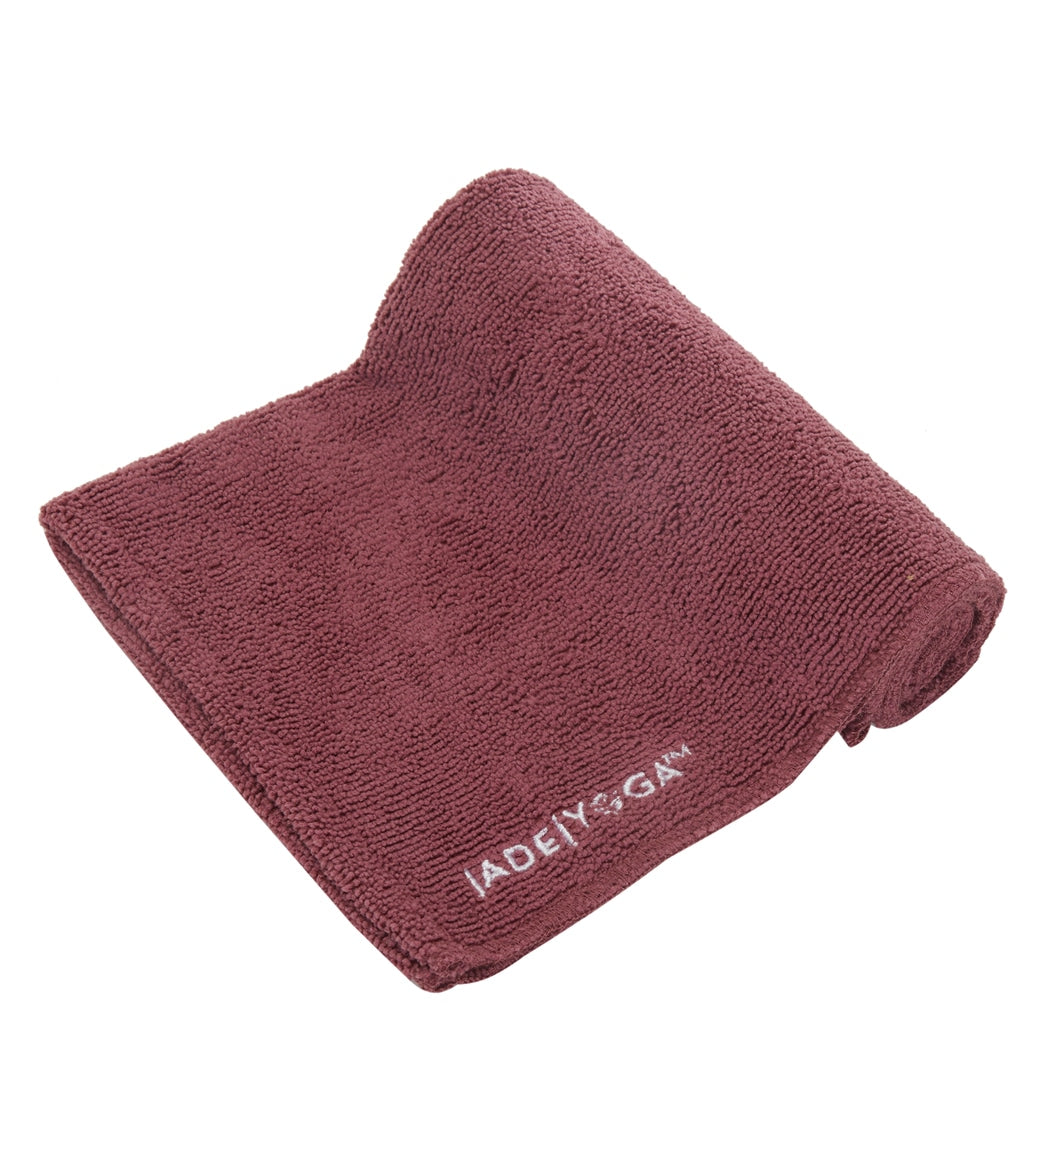 Jade Yoga Microfiber Hand Towel 24 at